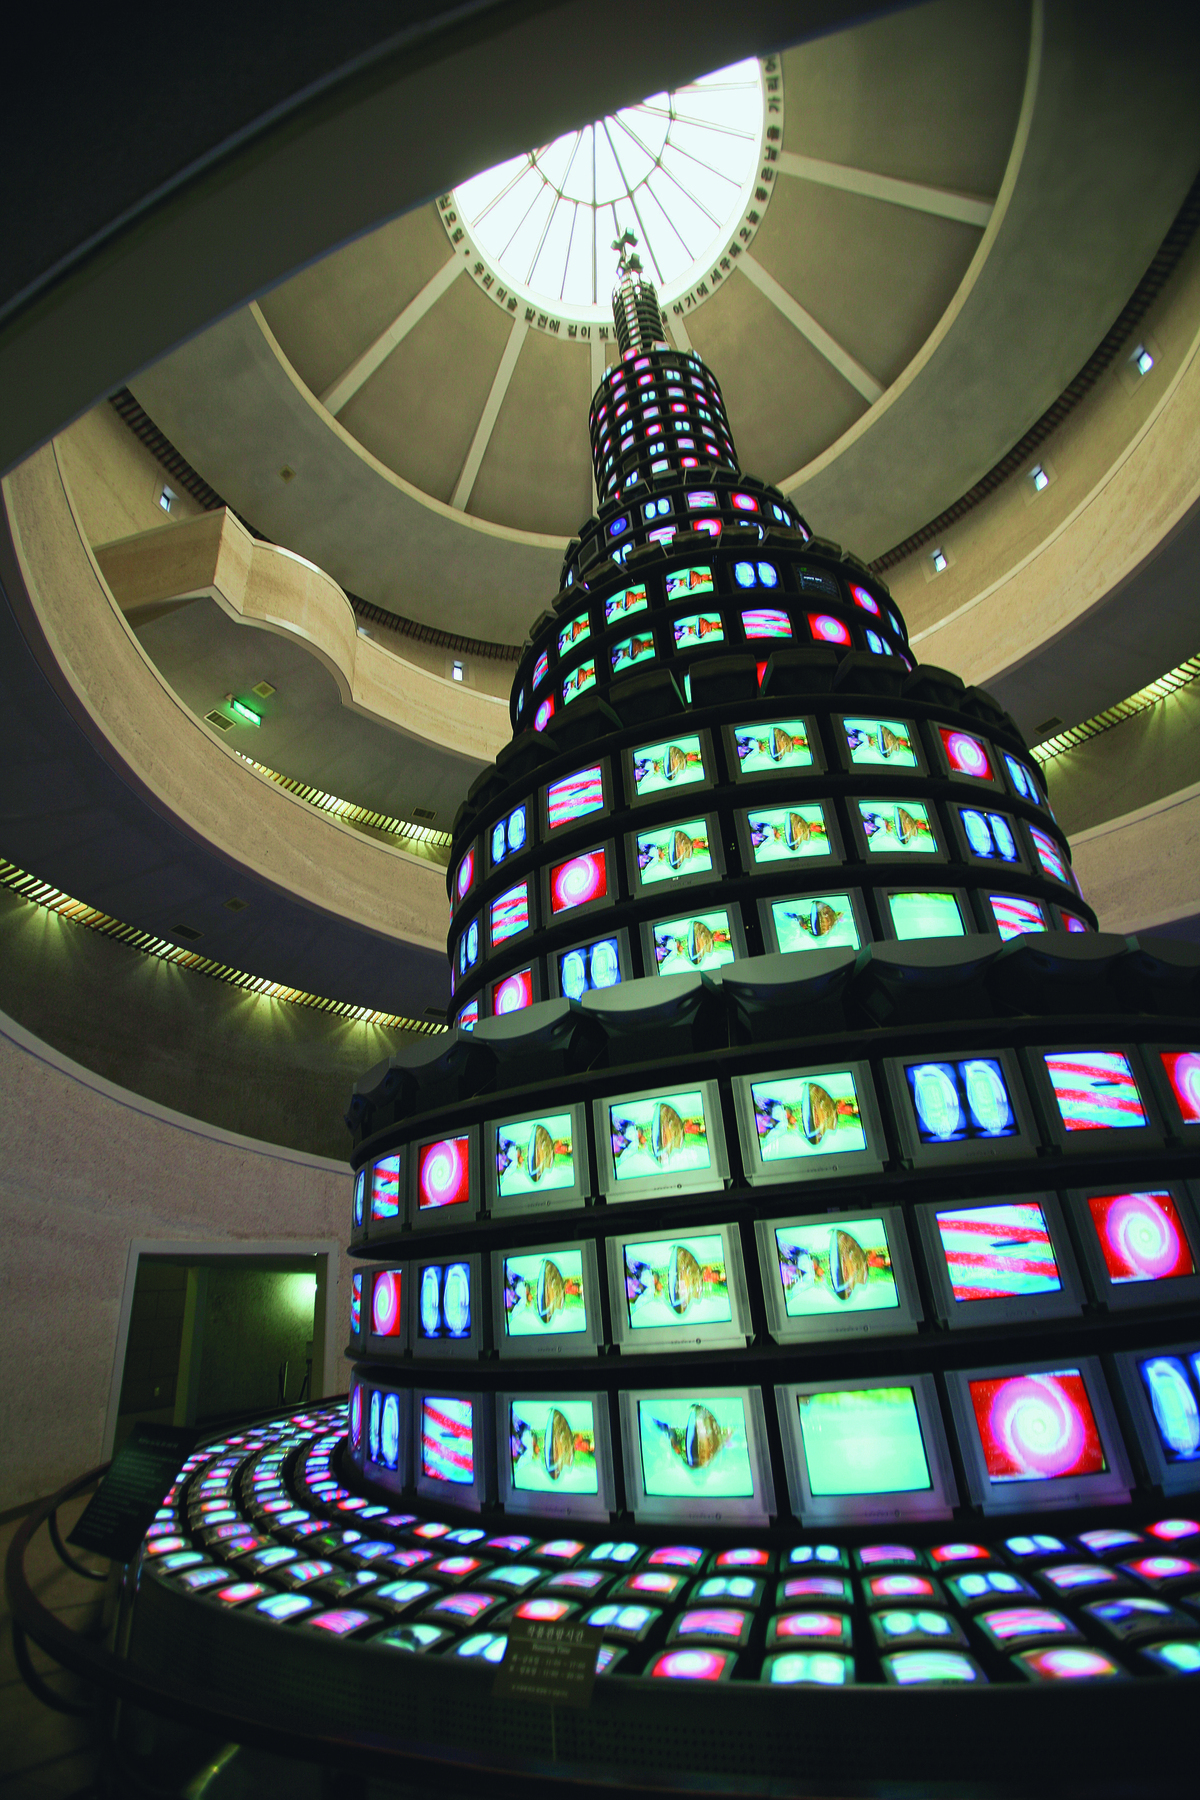 Fotografia. Videoinstalação feita com aparelhos de TV ligados. Trata-se de uma torre alta, com mais de 10 níveis, que quase alcança o teto. Na base da obra, há monitores de TV deitados, formando uma espécie de pedestal para a torre. As cores das imagens mostradas nos monitores de TV são  vermelho e azul-claro. As imagens são abstratas. Ao fundo, salão com mezaninos para que as pessoas possam apreciar as camadas superiores da obra de arte.